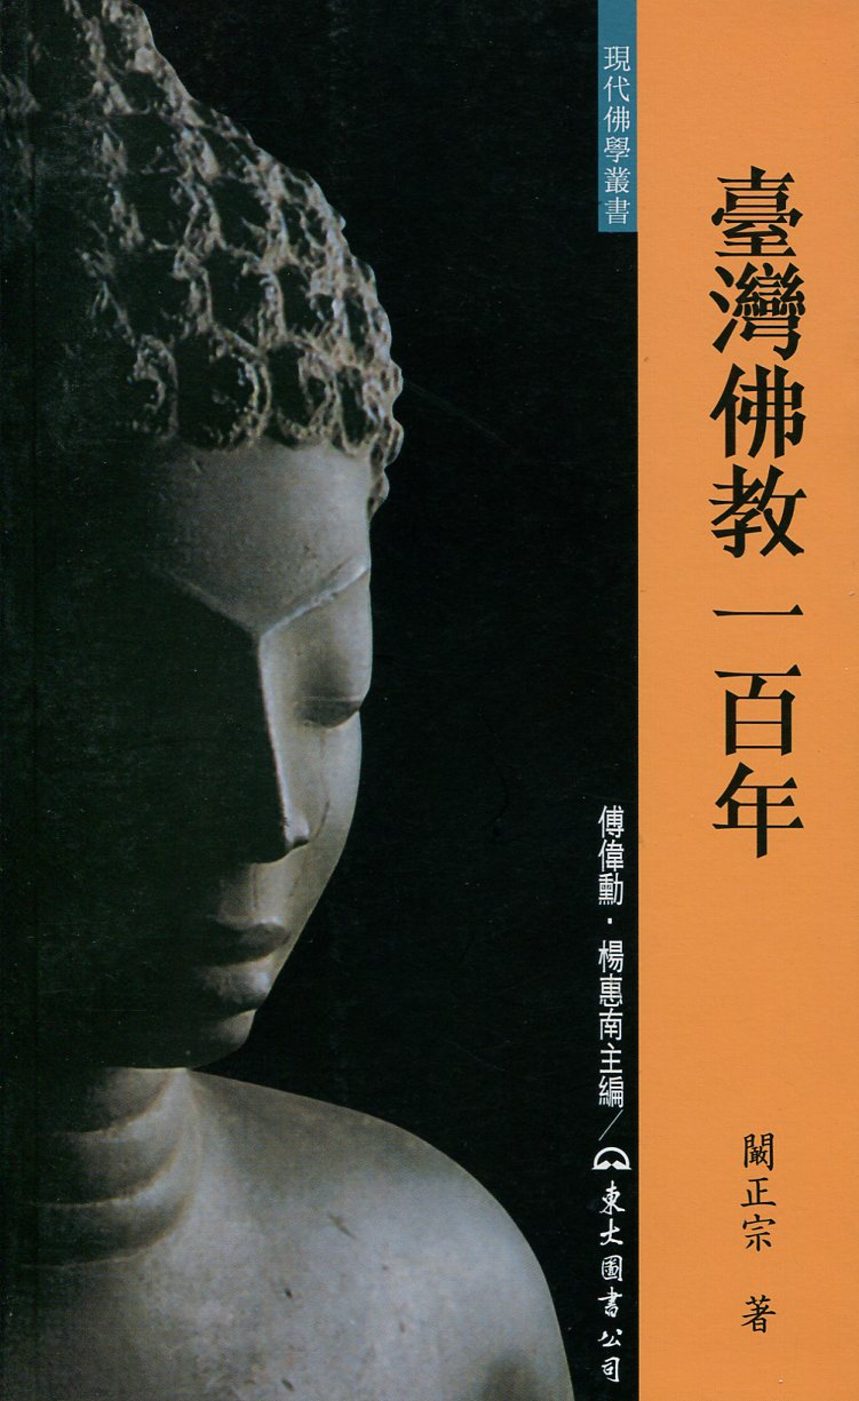 臺灣佛教一百年(增訂二版)